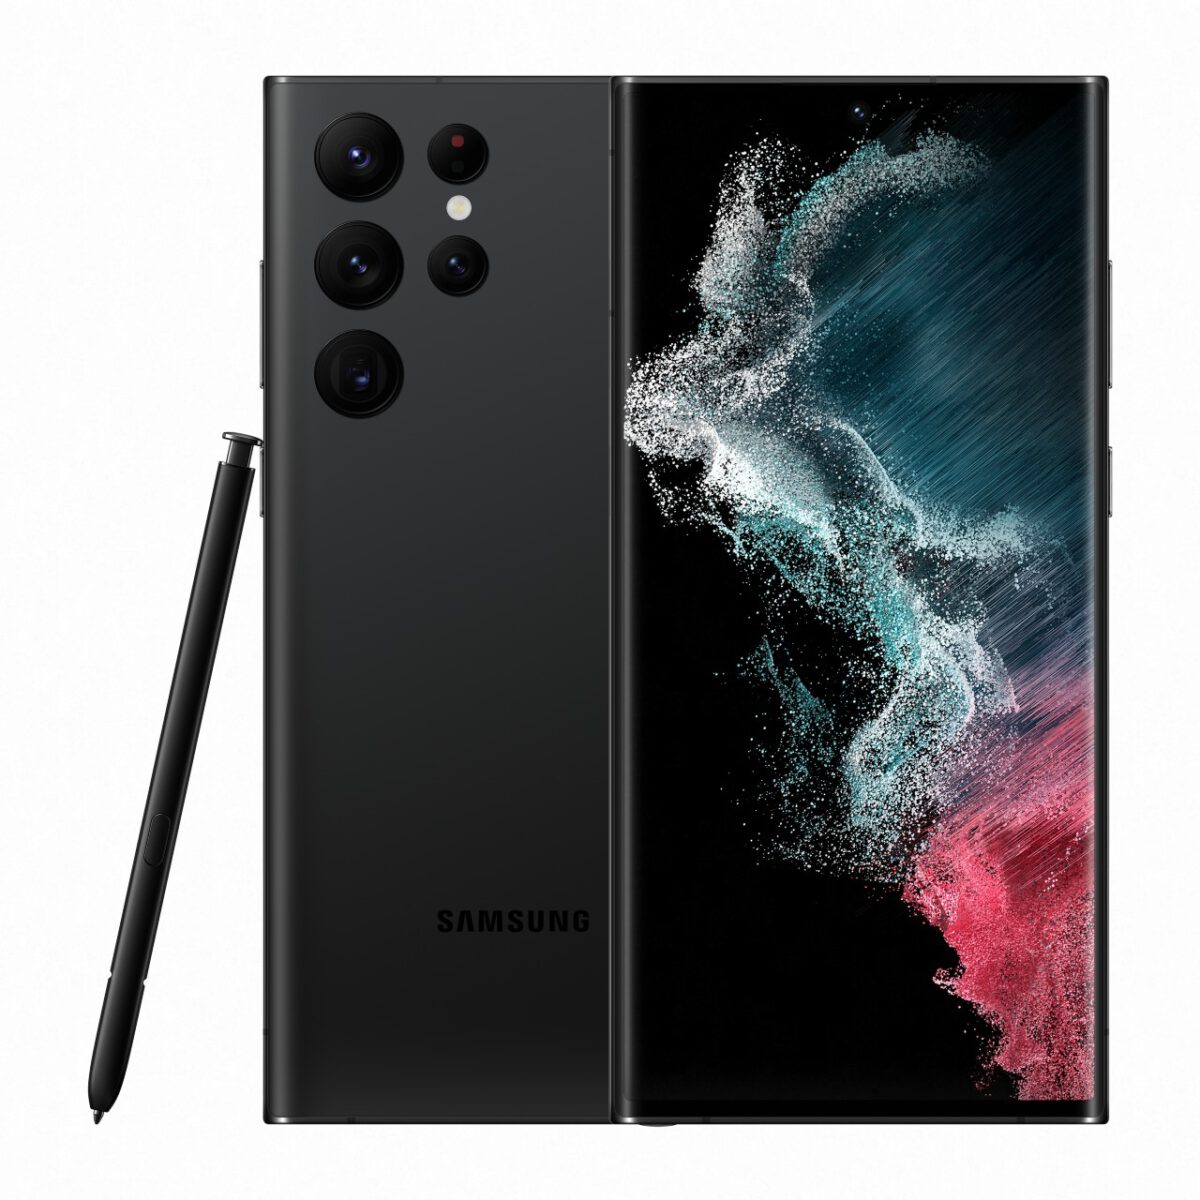 Samsung Galaxy S22 Series ra mắt: Trải nghiệm sớm, nhận nhiều ưu đãi giá trị